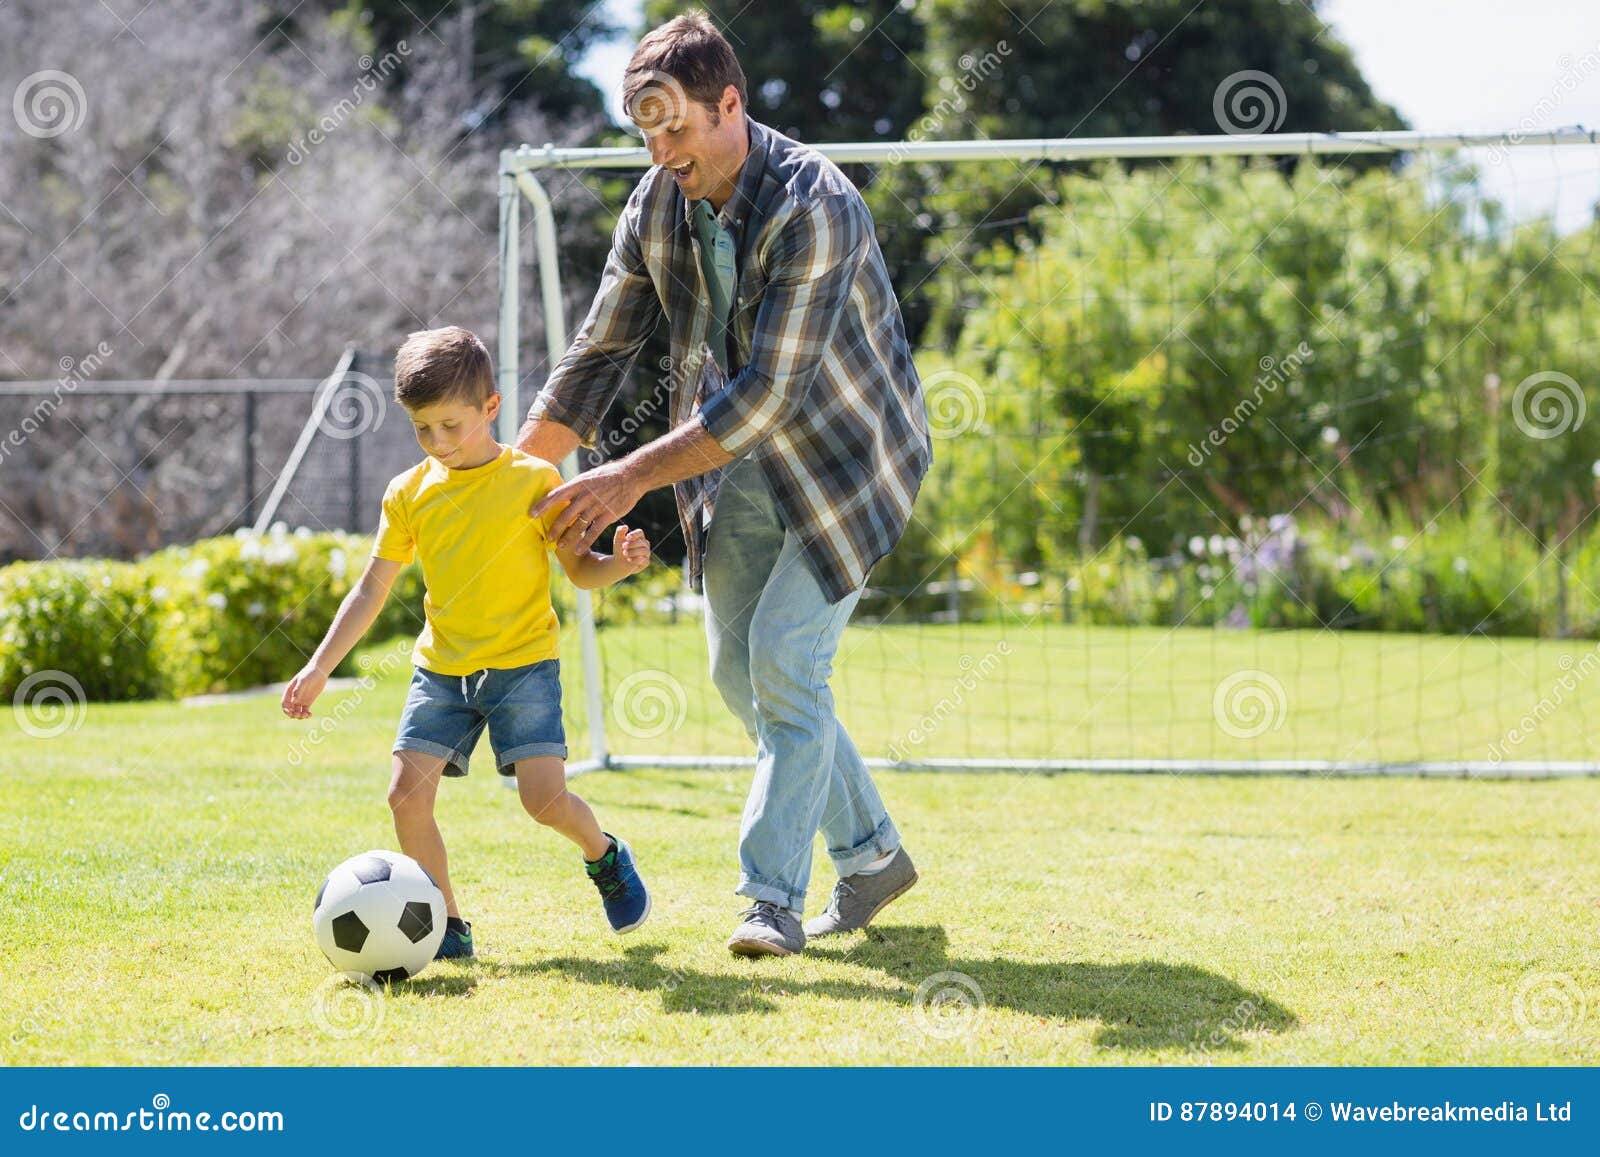 Папы играют в футбол. Отец и сын футбол. Отца и сына играющих в футбол. Папа с сыном играют в футбол. Мальчик с папой играет в футбол.